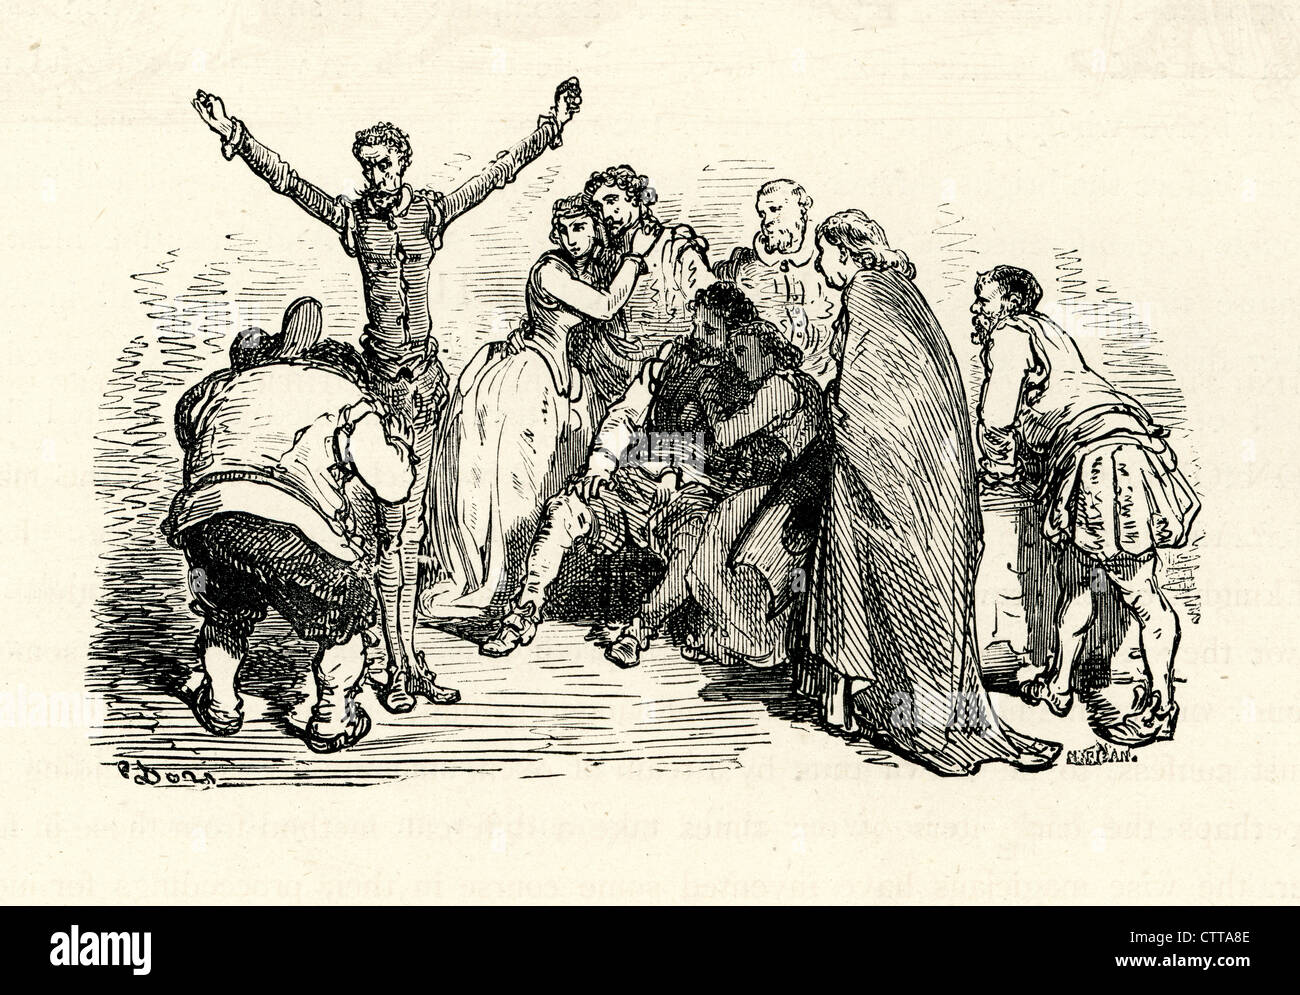 Don Quijote Sancho Panza zu beschimpfen. Illustration von Gustave Dore von Don Quijote. Stockfoto